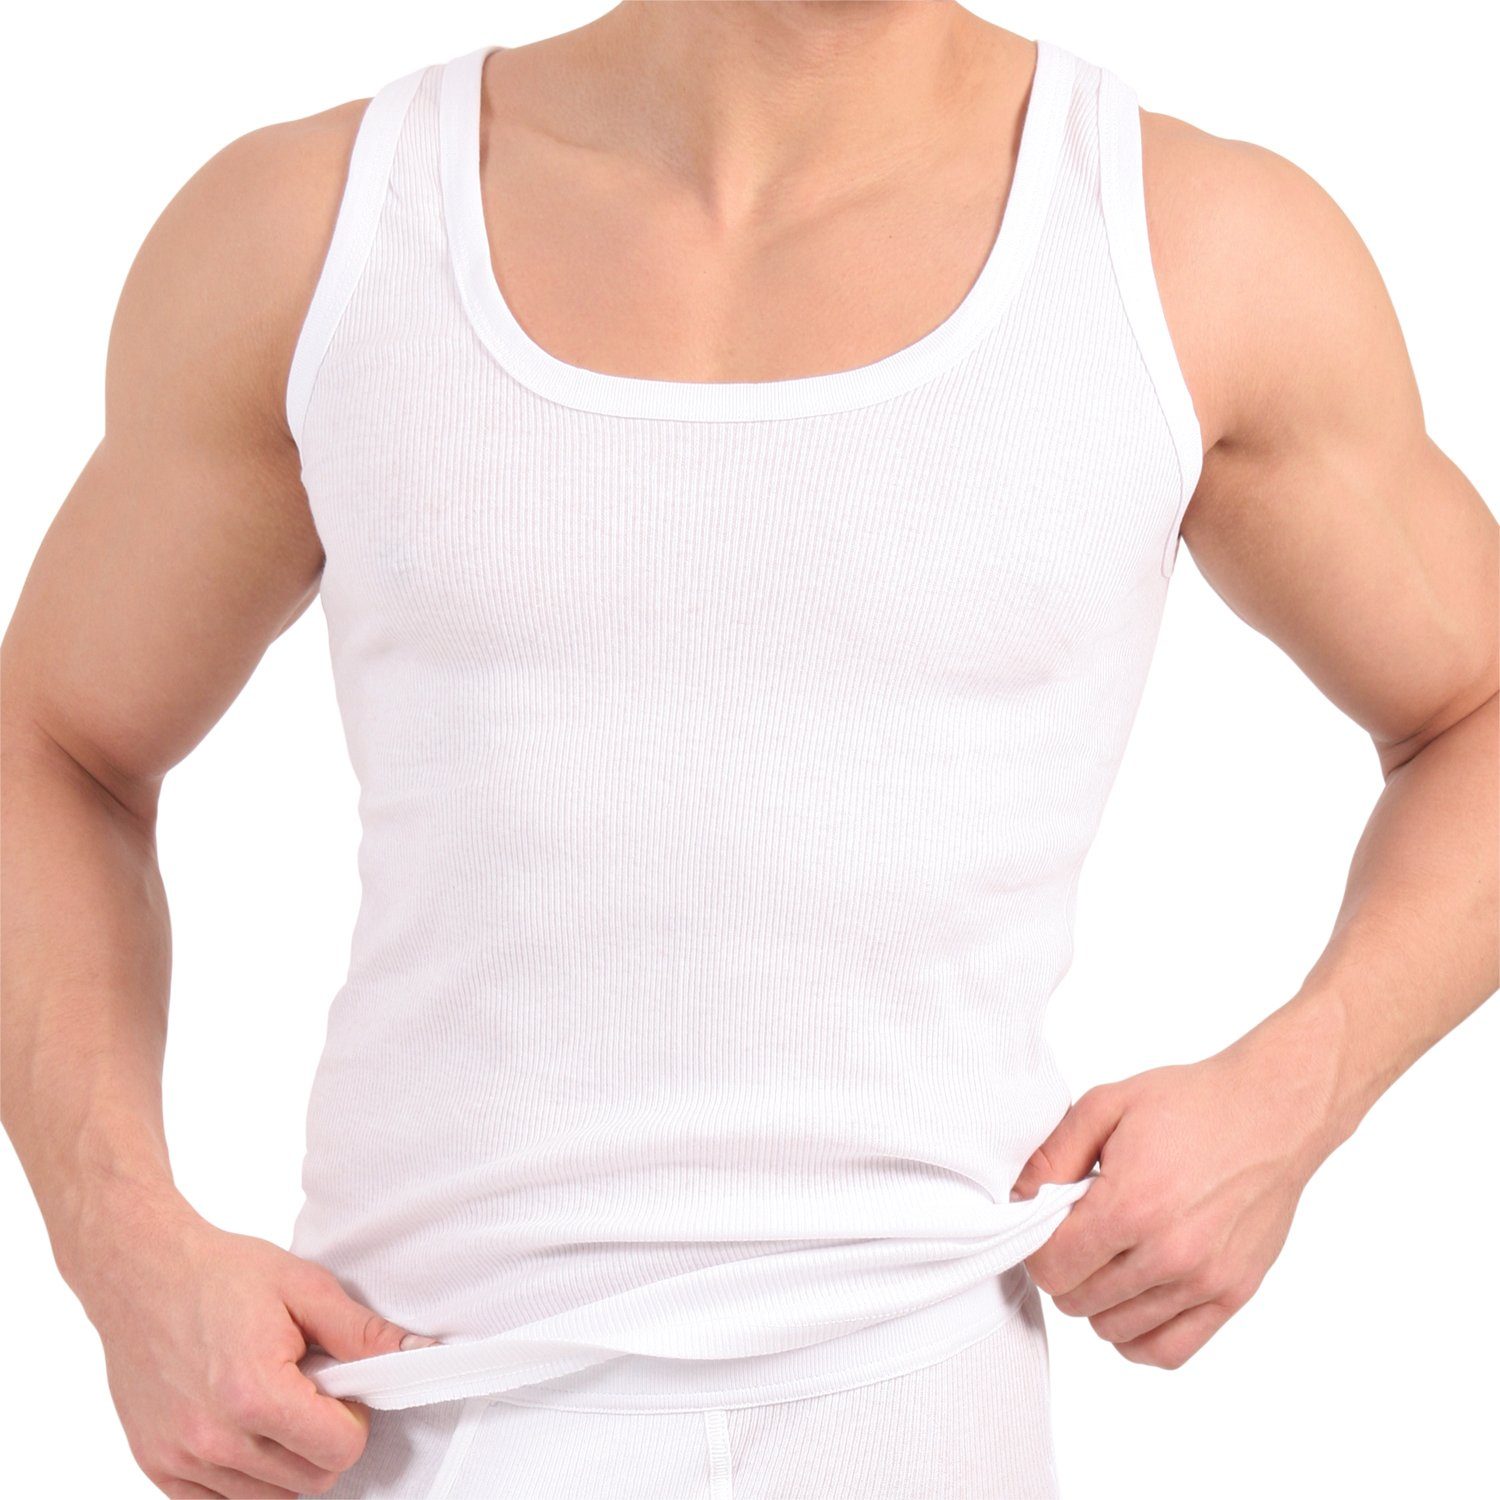 Baumwolle Tanktop (5er Herren celodoro Doppelripp Pack) Unterhemd Unterhemd aus